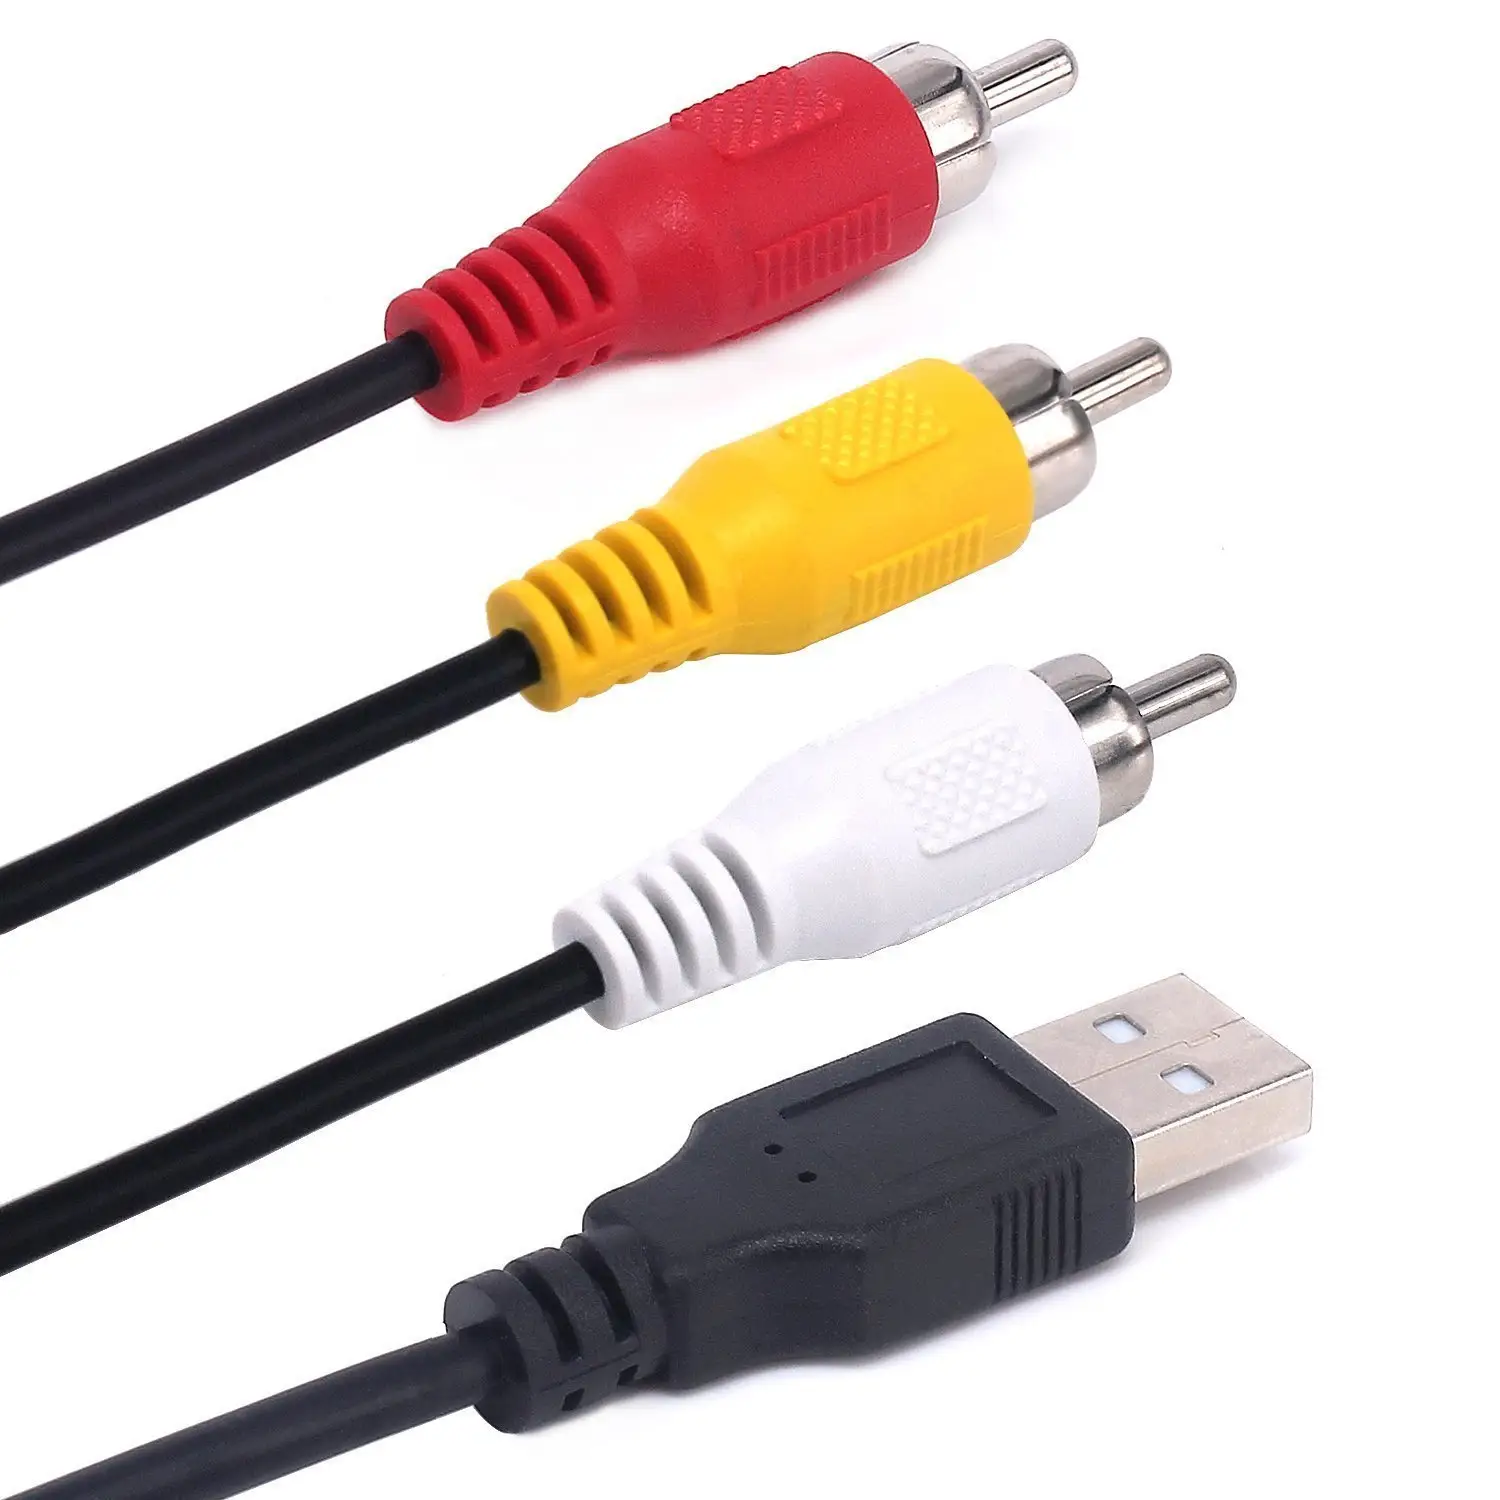 USB ses Video kamera adaptör kablosu kablosu için TV, Mac, PC